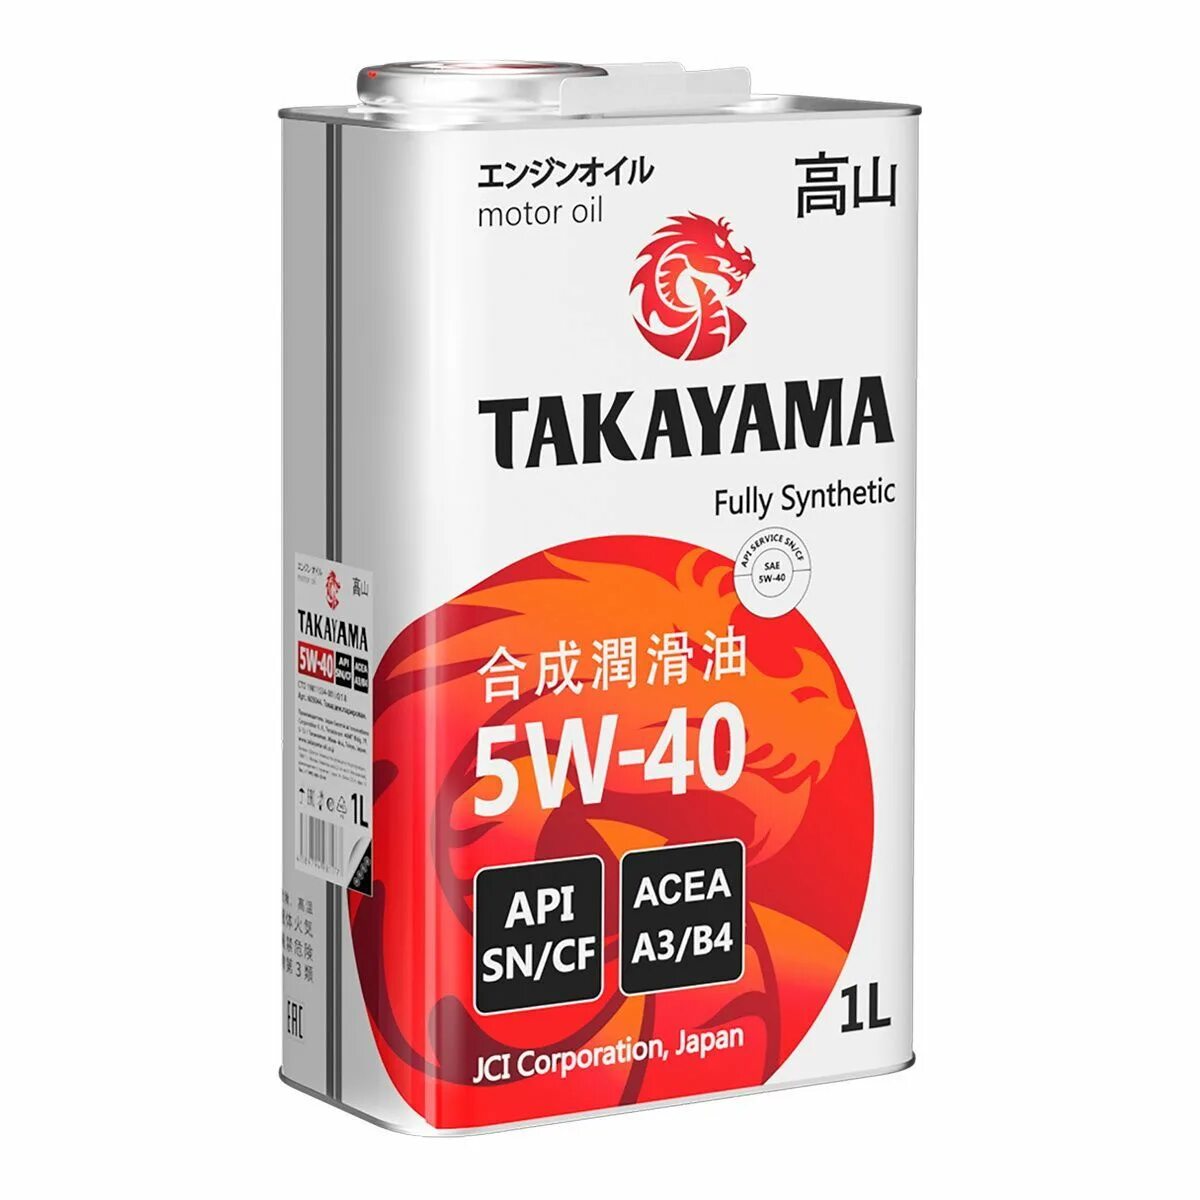 Купить моторное масло такаяма. Takayama 5w-40 API SN/CF. Takayama SAE 5w-40 API CF, SN a3/b4. 605045 Takayama масло Takayama SAE  5w40. API SN/CF. ACEA a3/b4 (4л). Takayama 605521промопак Takayama акция 5w40 SN/CF синтетика 4л + 1л.